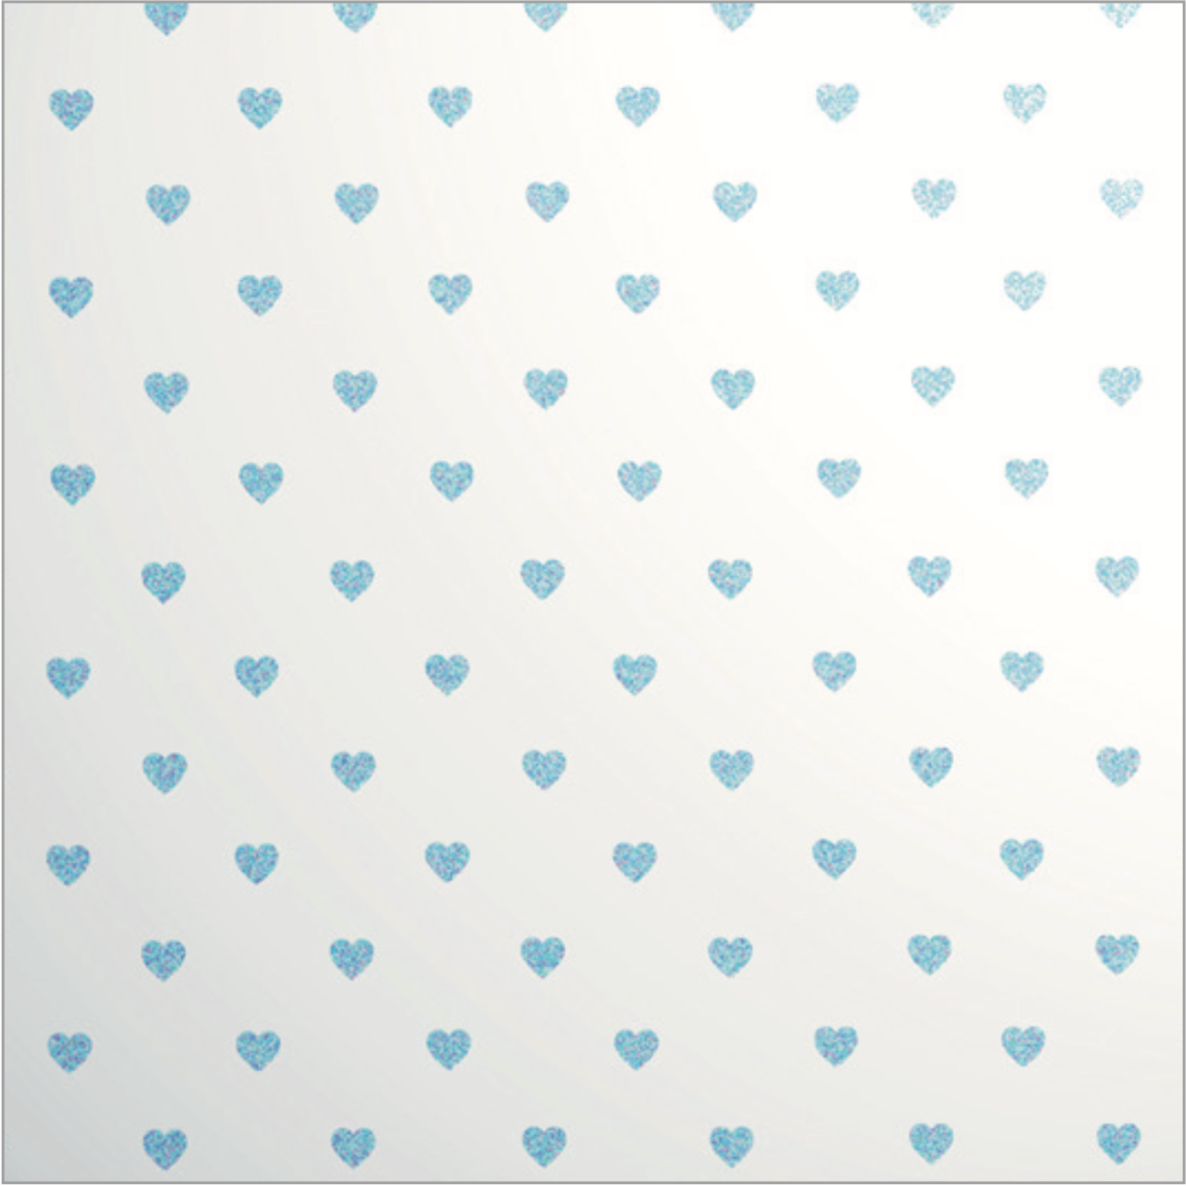 Glitter Les Petits Mini Heart Blue on White